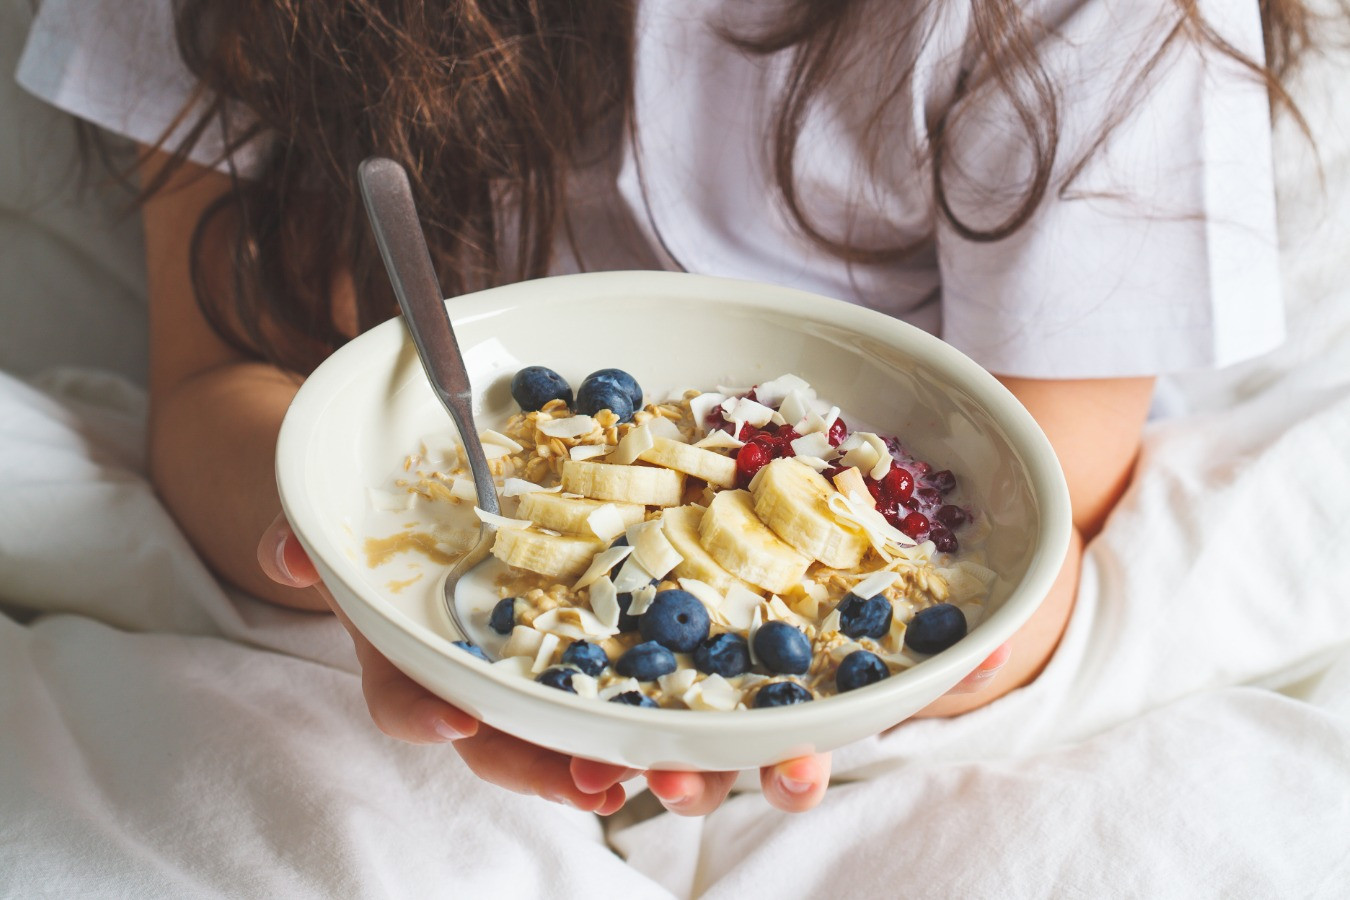 Овсянка на завтрак: польза и вред | Эксперты объясняют от Роскачества